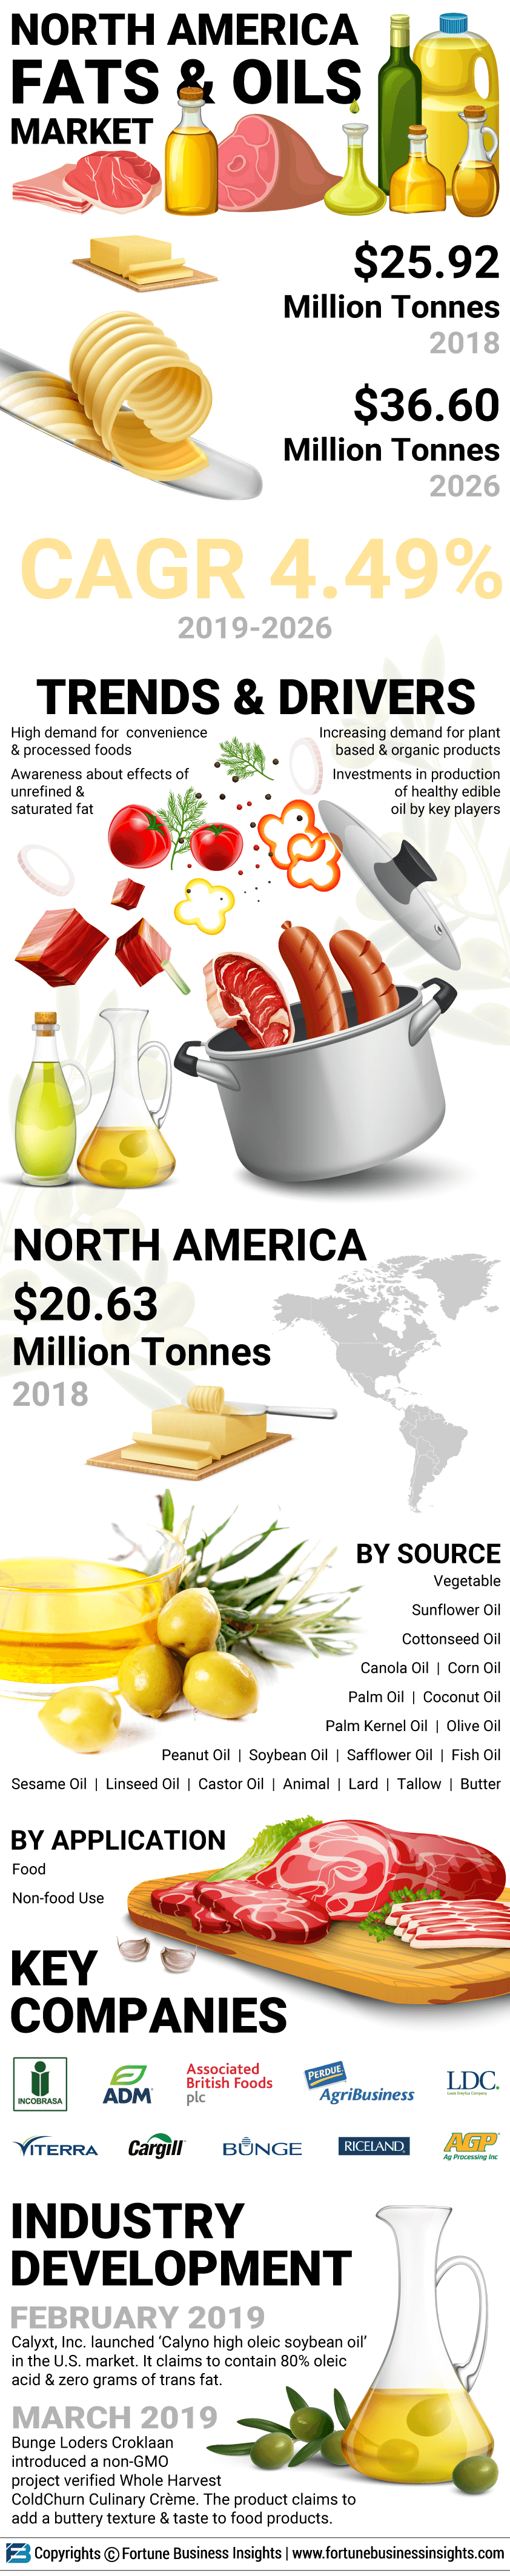 North America fats & oils Market